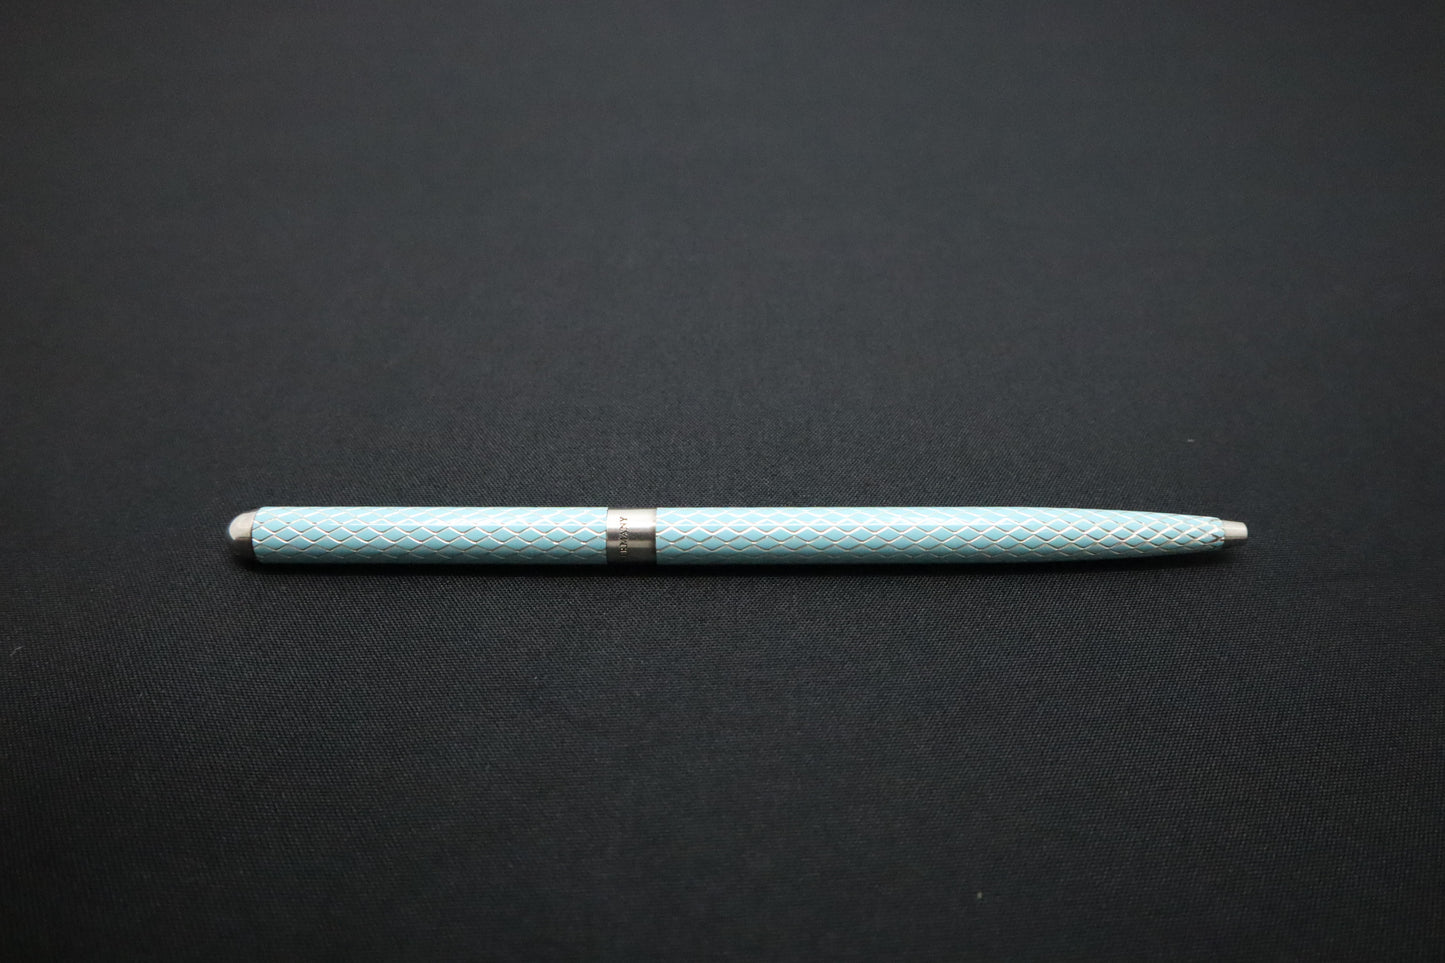 Tiffany & Co. Pen in Tiffany Blue & Sterling Silver